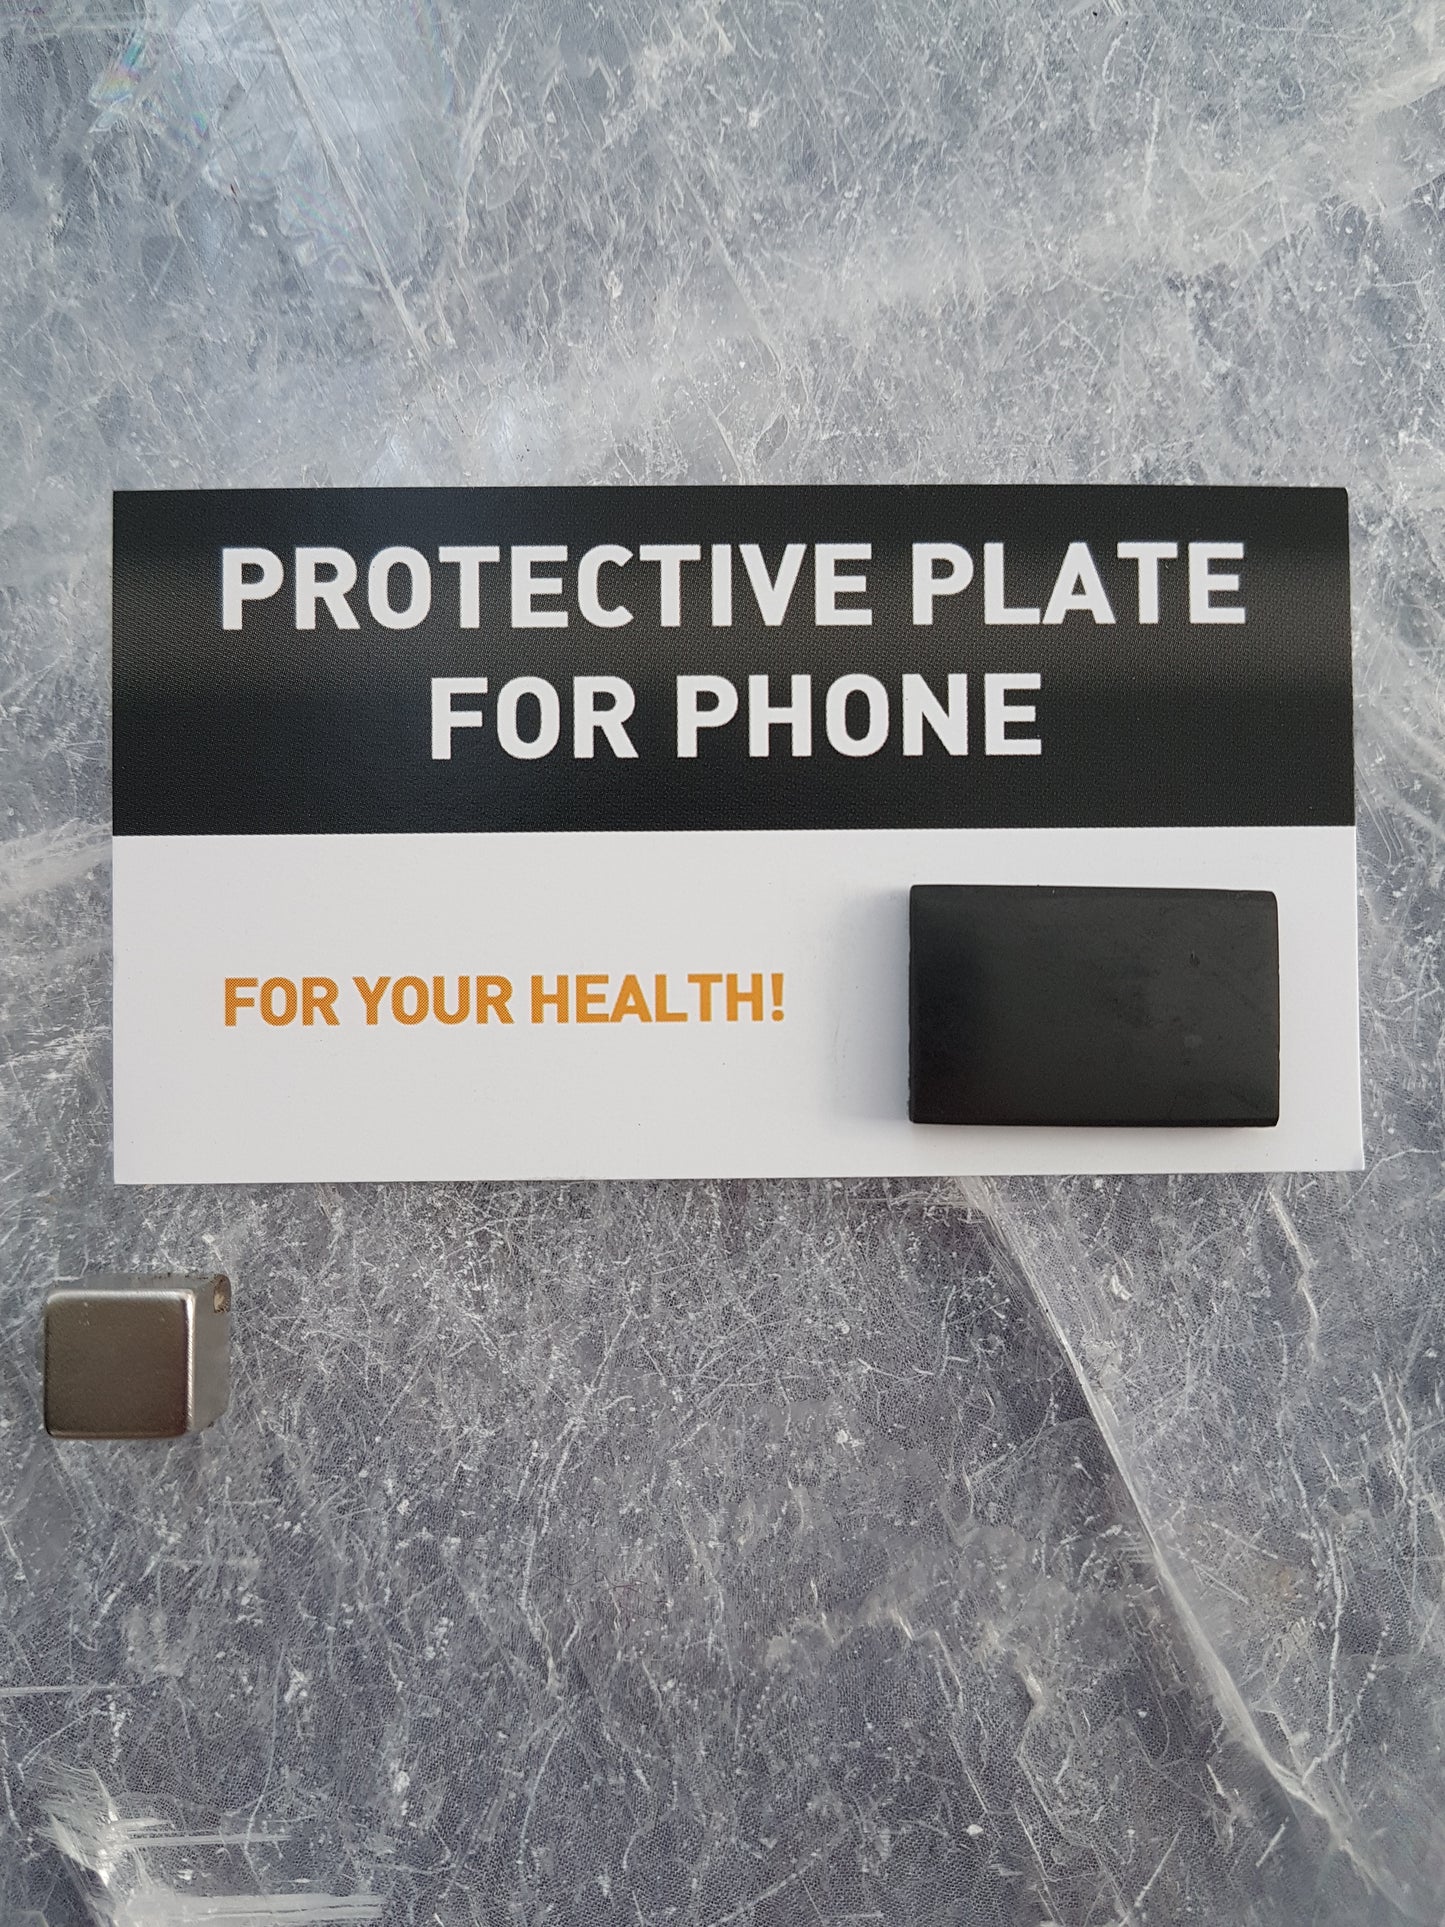 Beskyttelse for stråling fra telefoner - Shungit plade